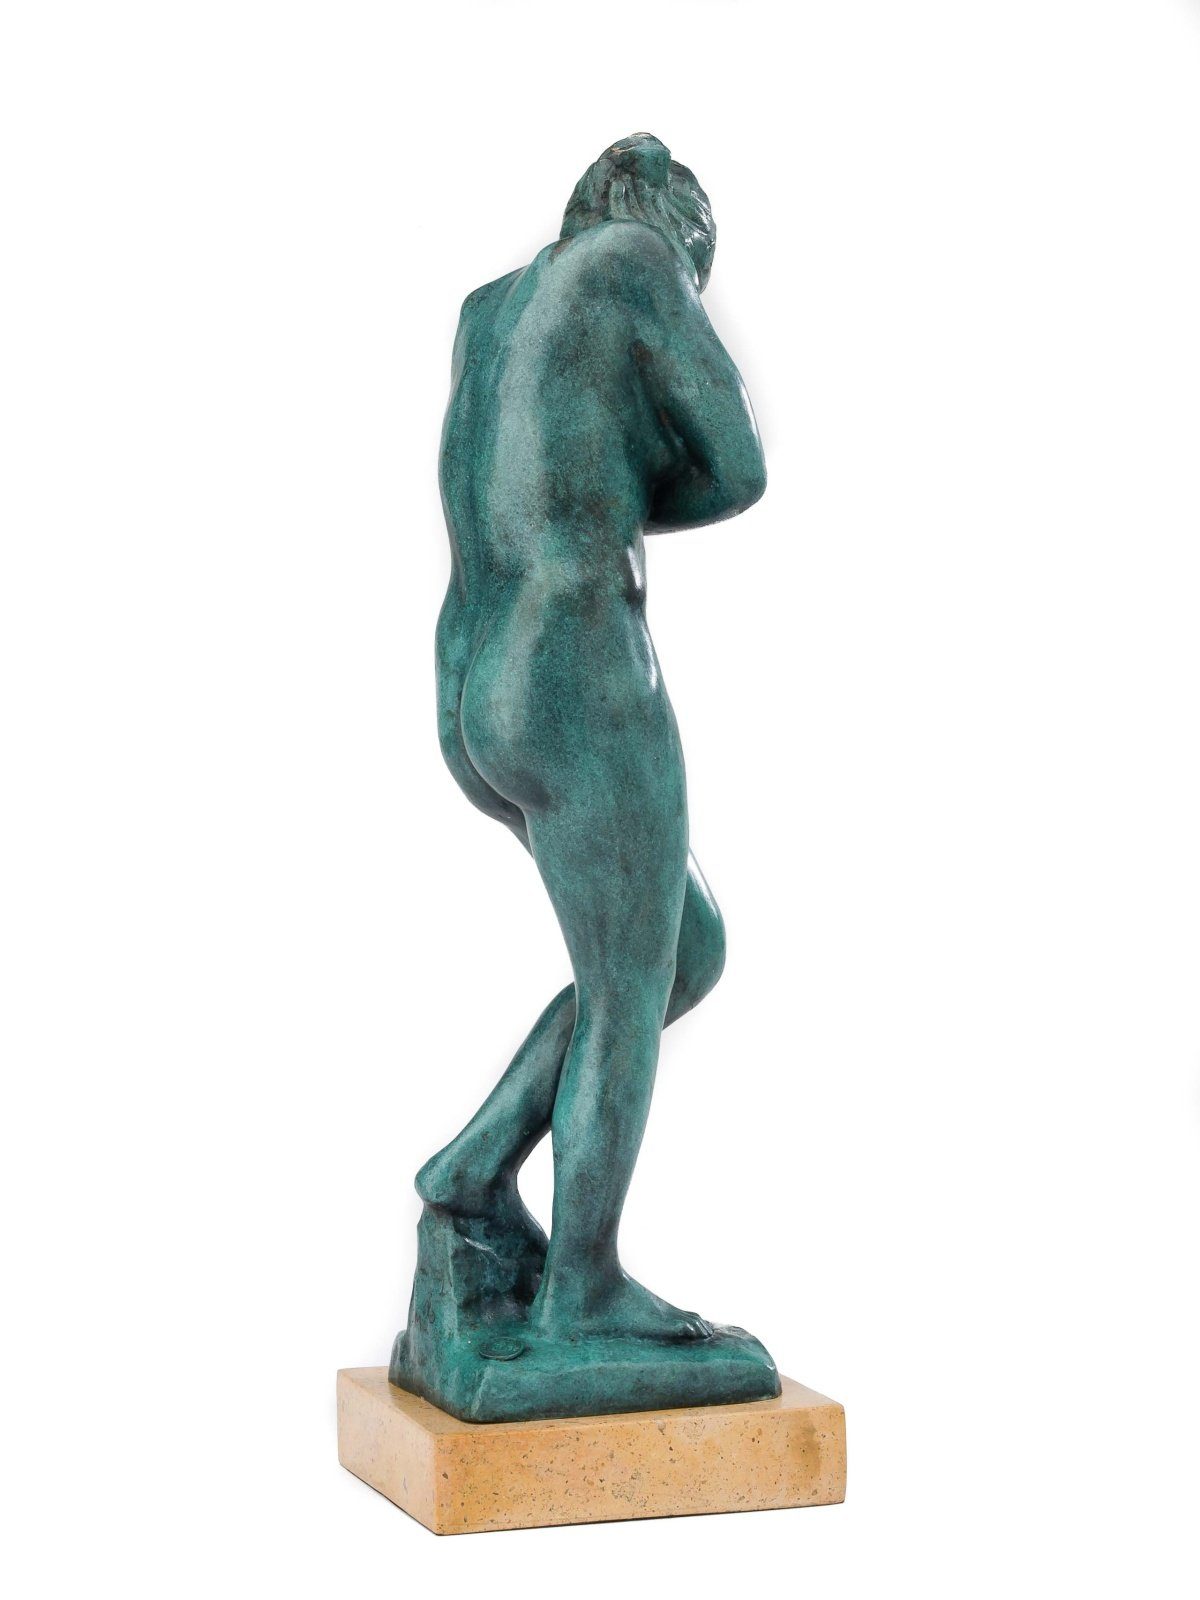 Antik-St Kopie nach Figur Eva Replik Figur Rodin Bronzeskulptur Skulptur Bronze Aubaho